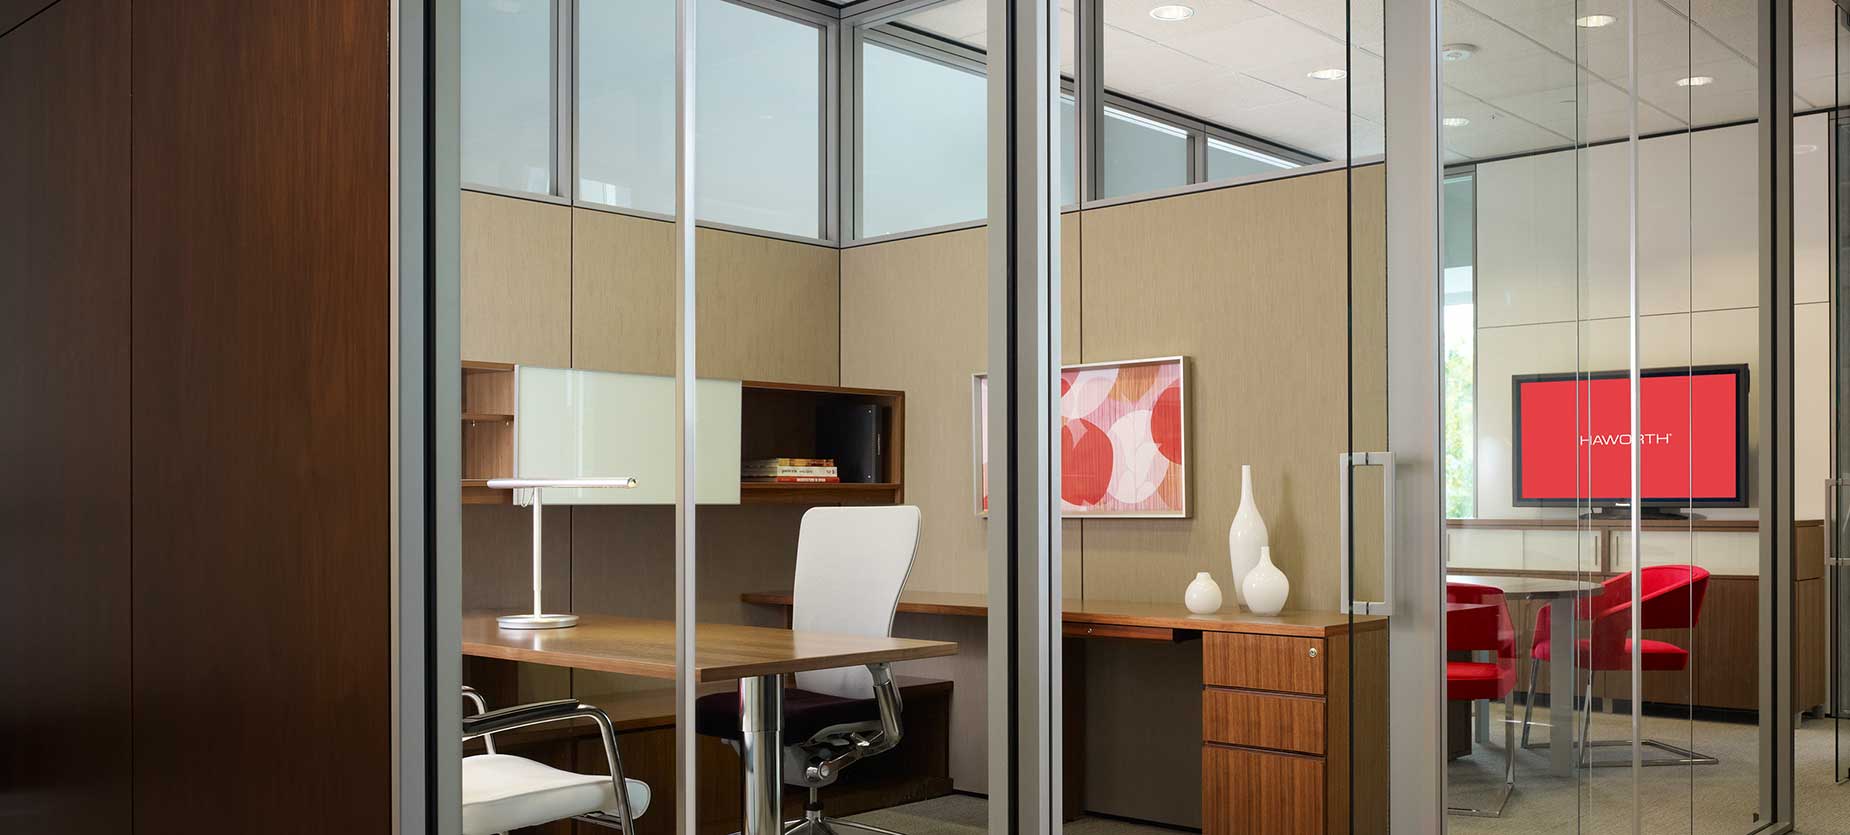 这个传统风格的独立办公室既支持专注的伏案工作，也支持与客人的交际互动。而且，它还提供了开放和封闭的储物空间，以及可钉表面，而且还可以用配件对这间高管办公室进行个性化装饰。